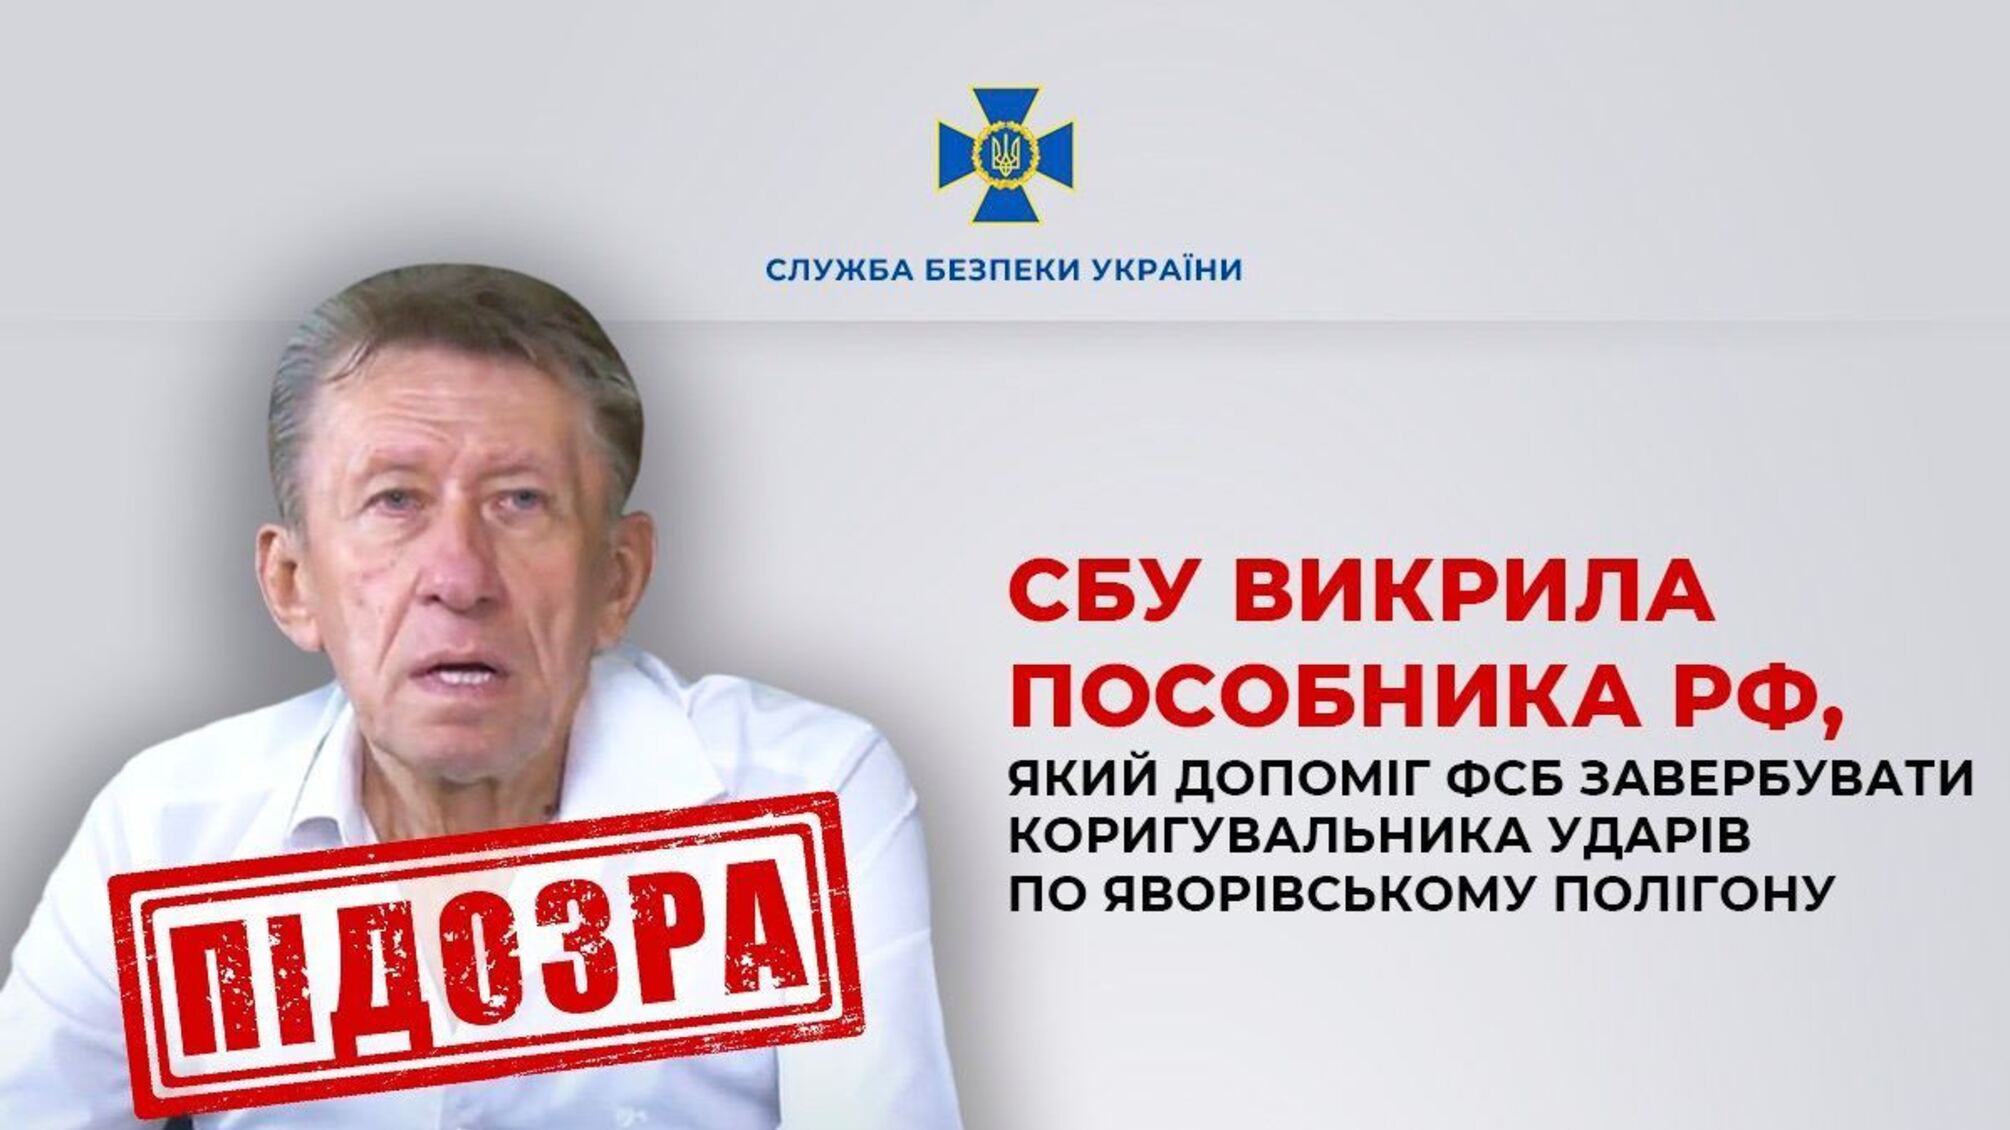 Сприяв удару по Яворівському полігону: СБУ затримала агента російської ФСБ